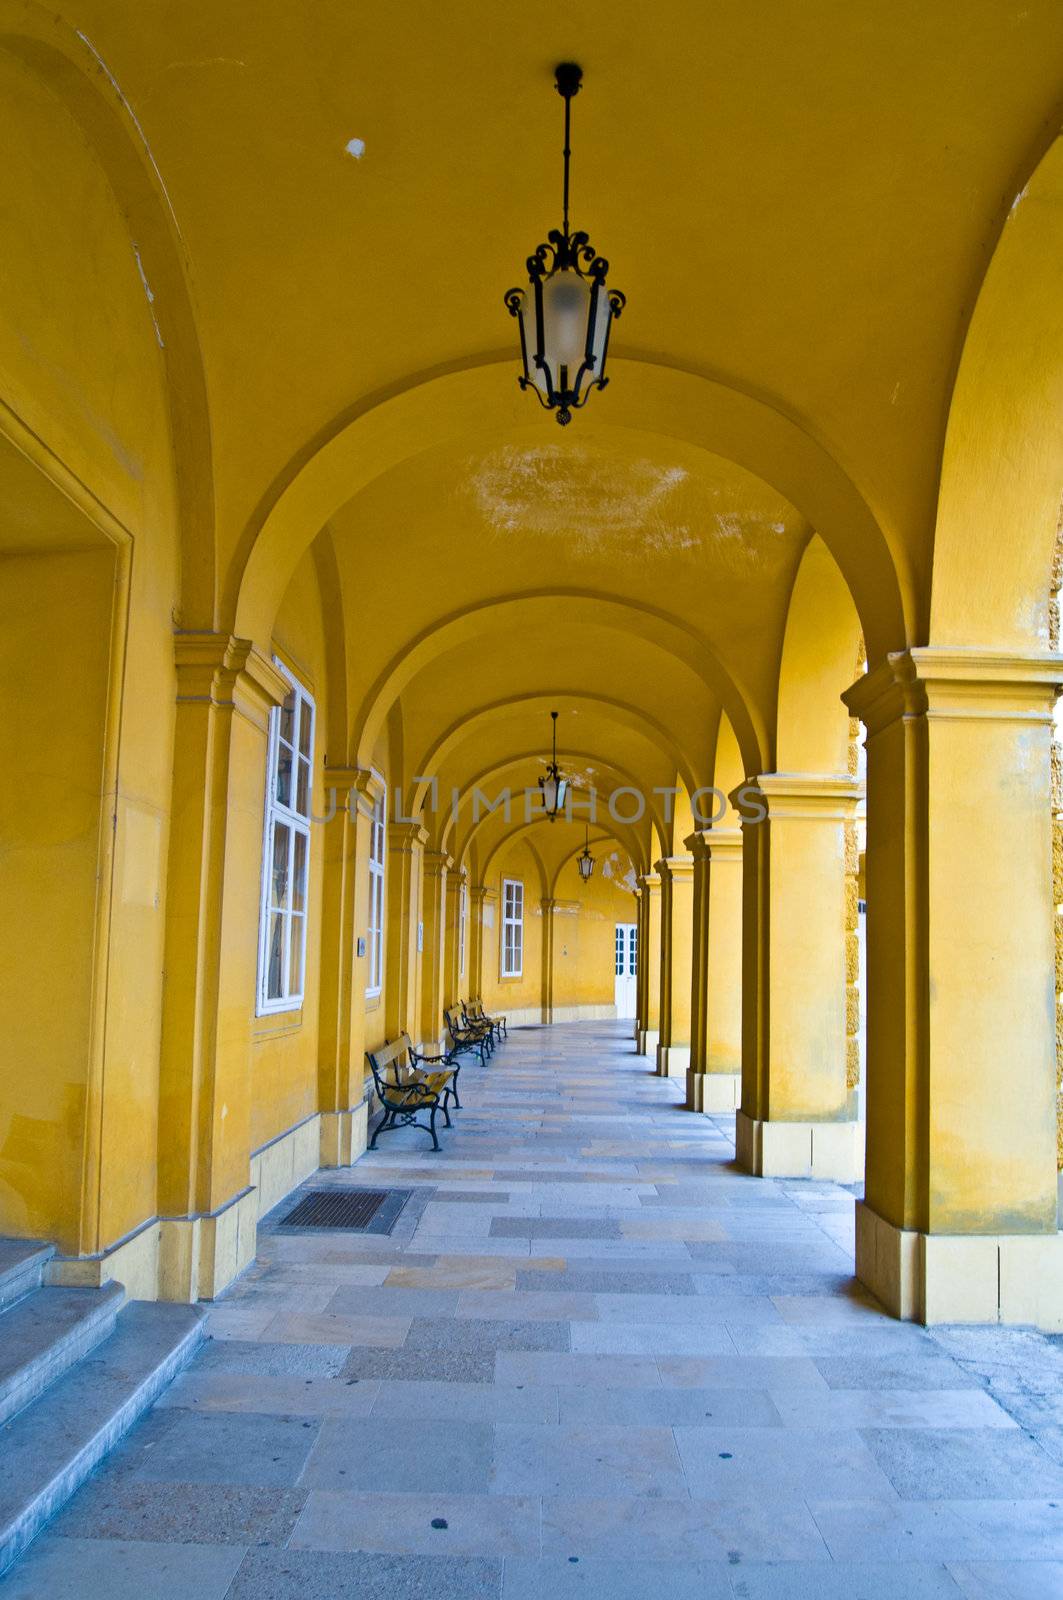 Colonnade in Schoenbrunn by Jule_Berlin